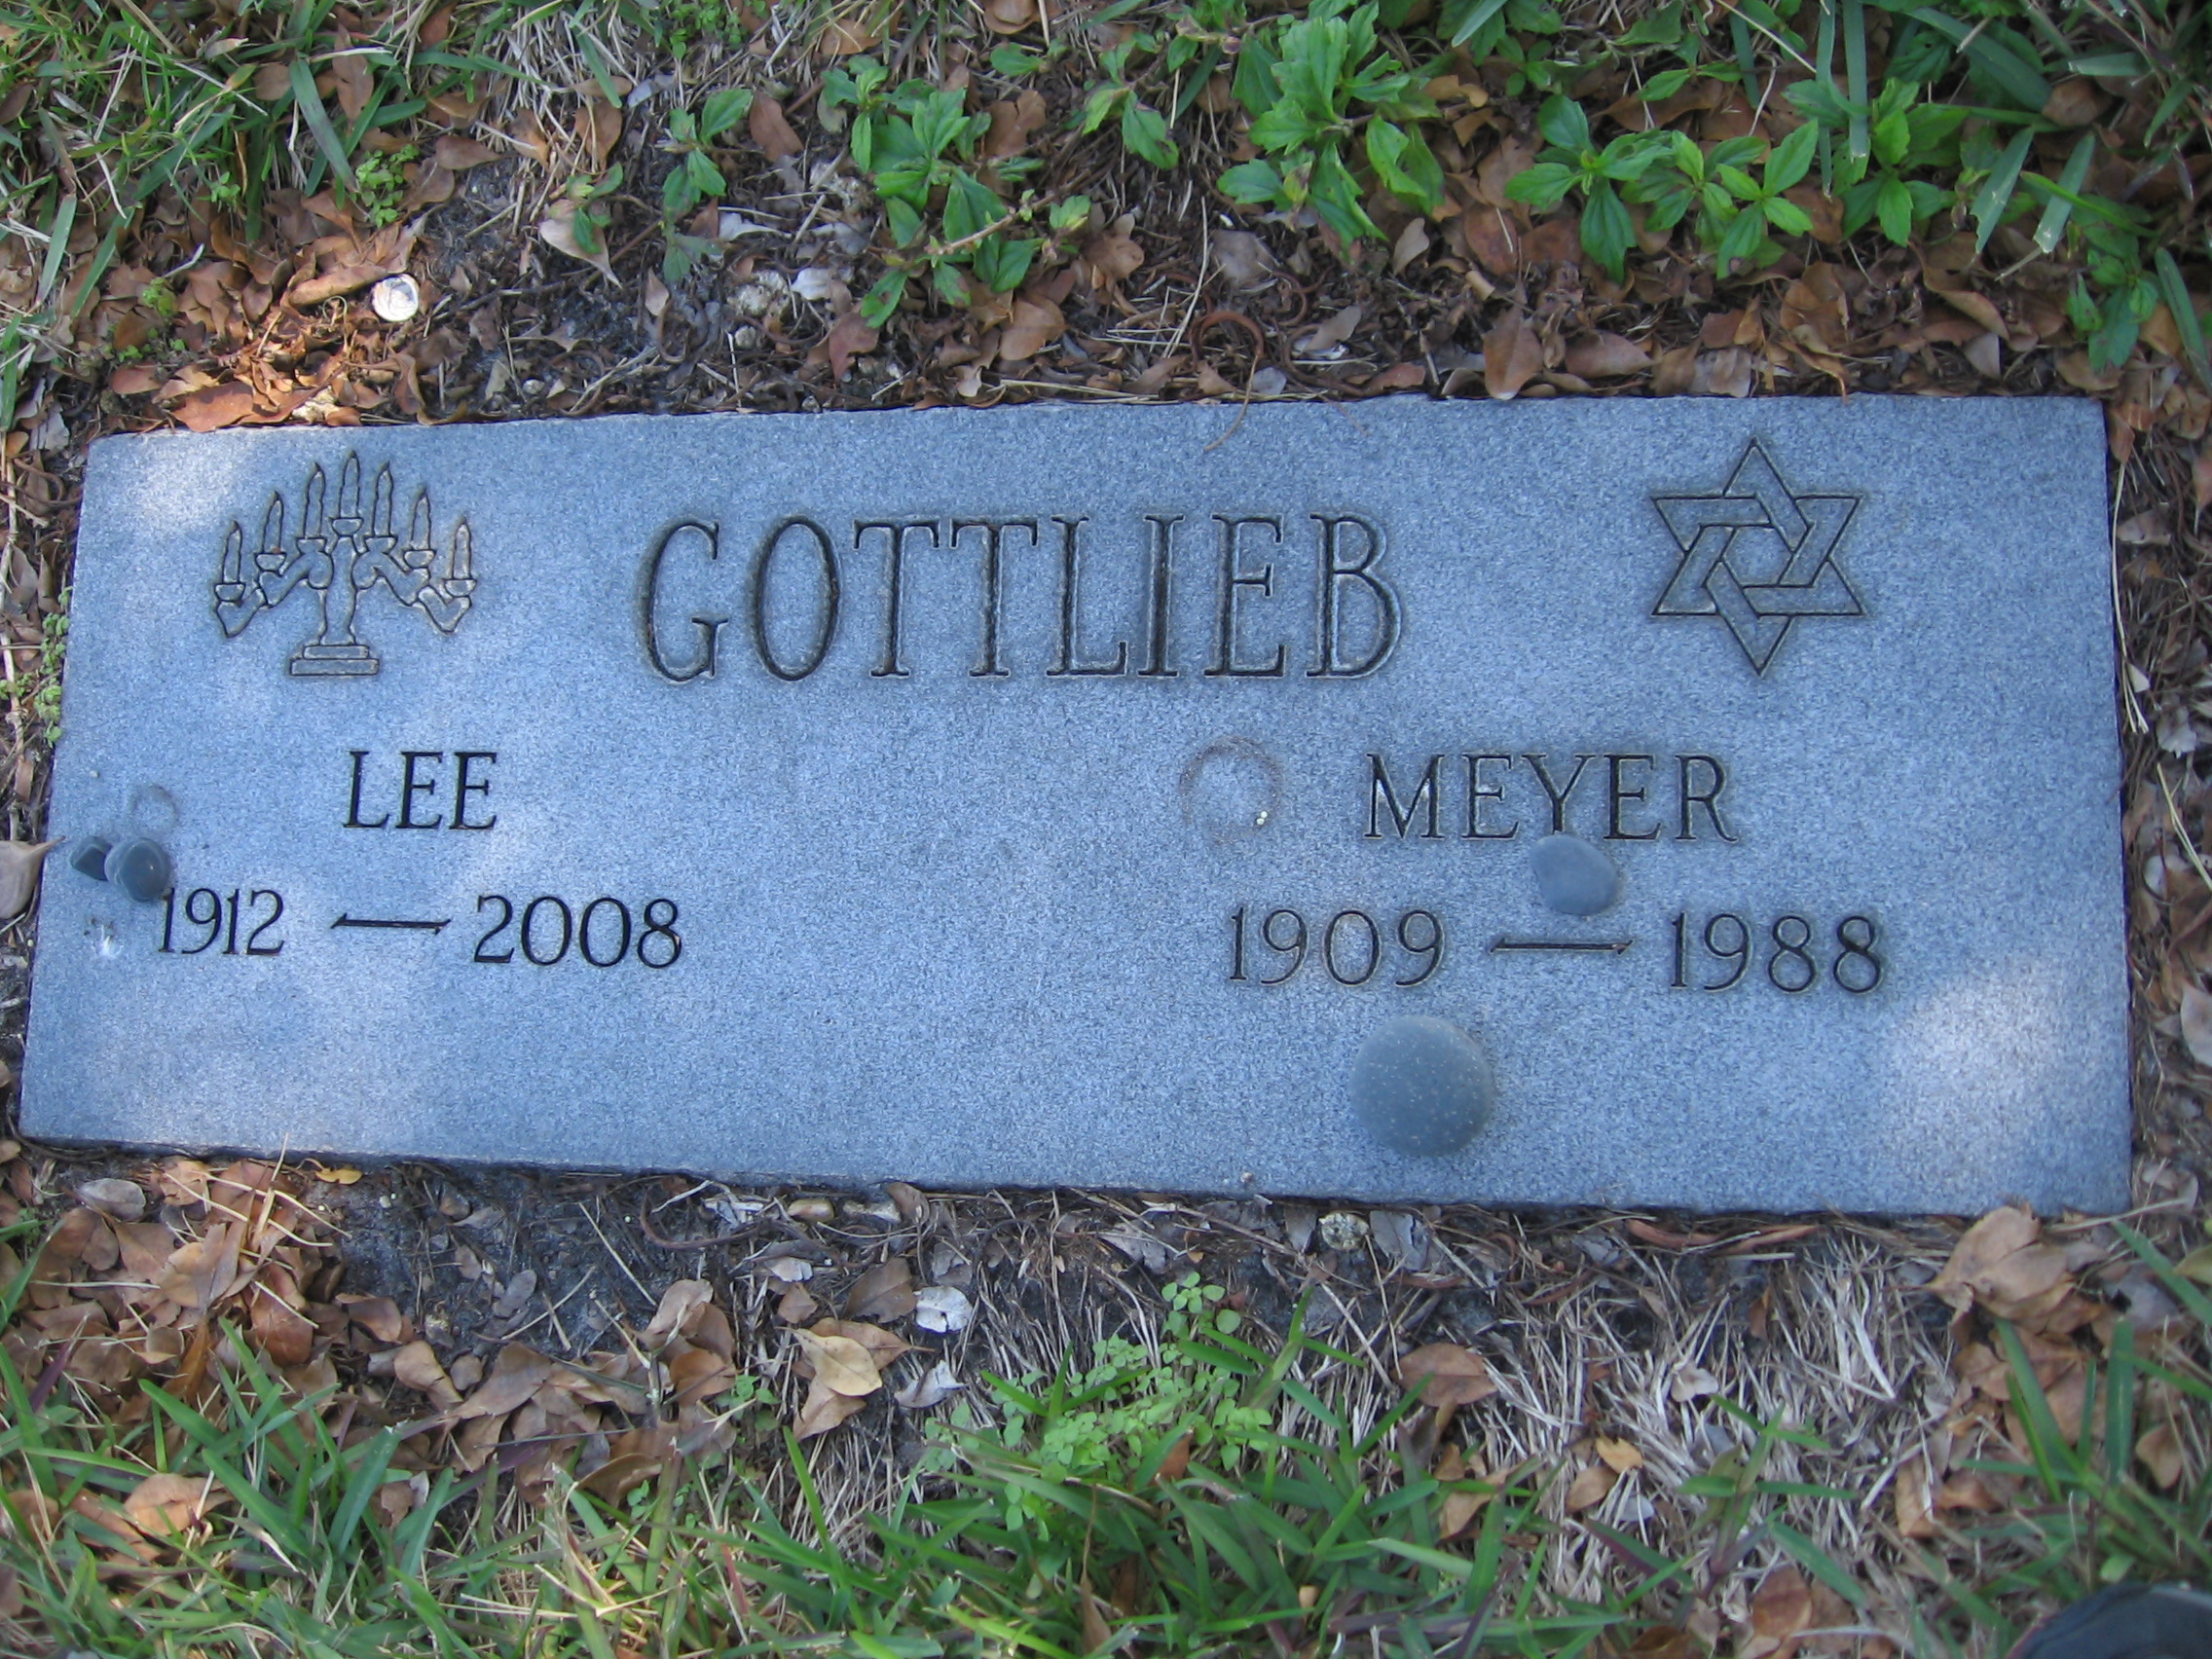 Meyer Gottlieb